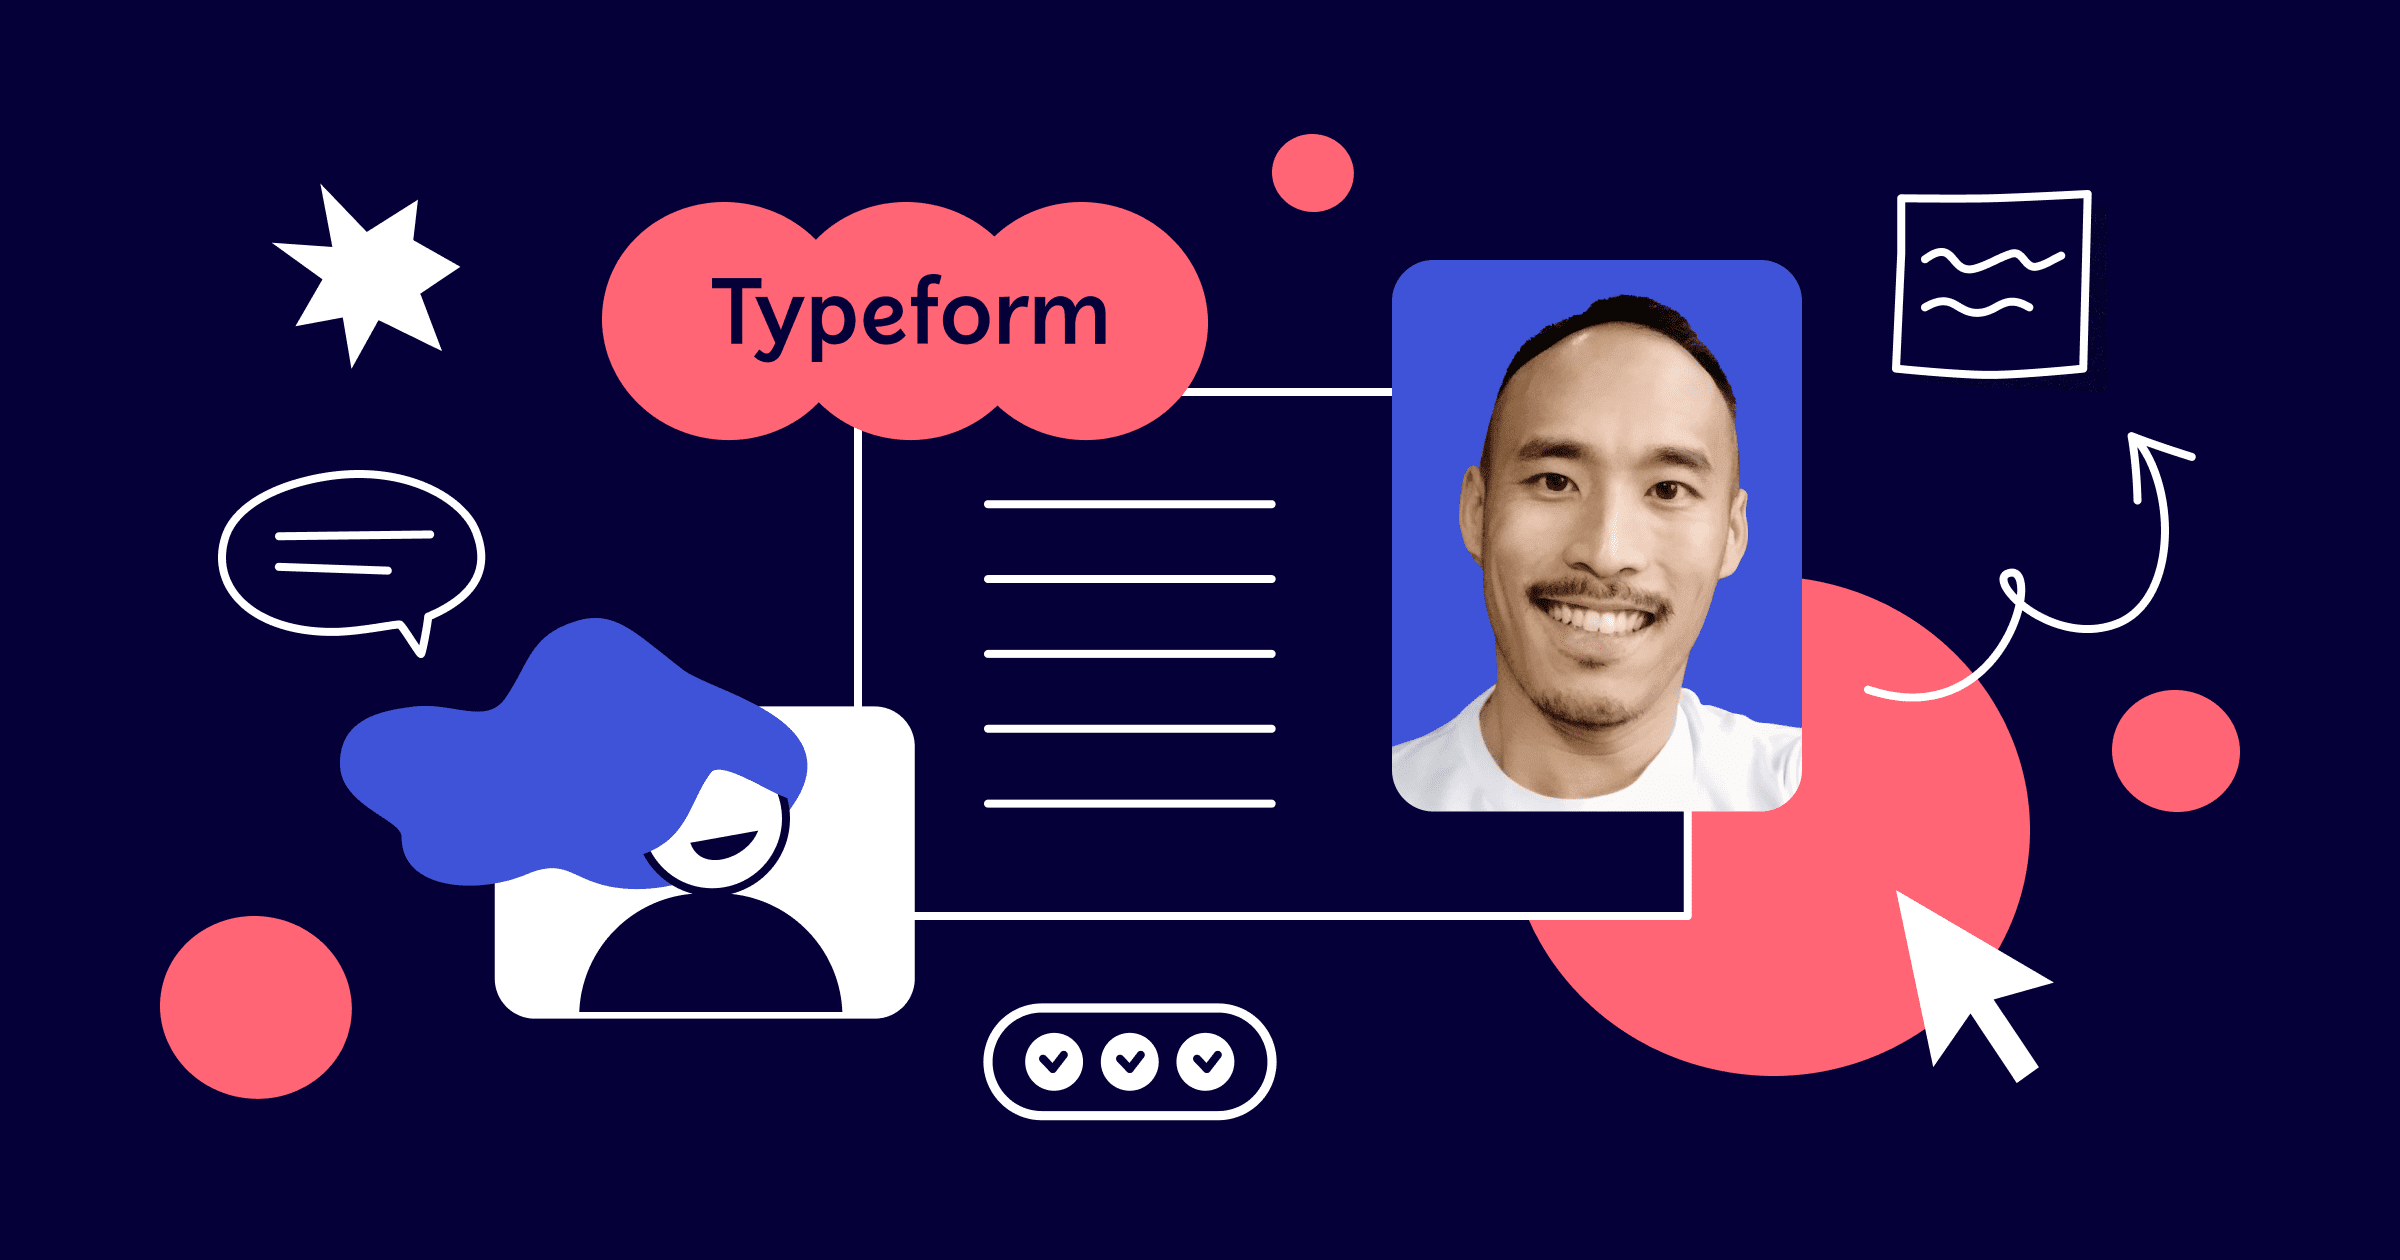 My first typeform - Help Center